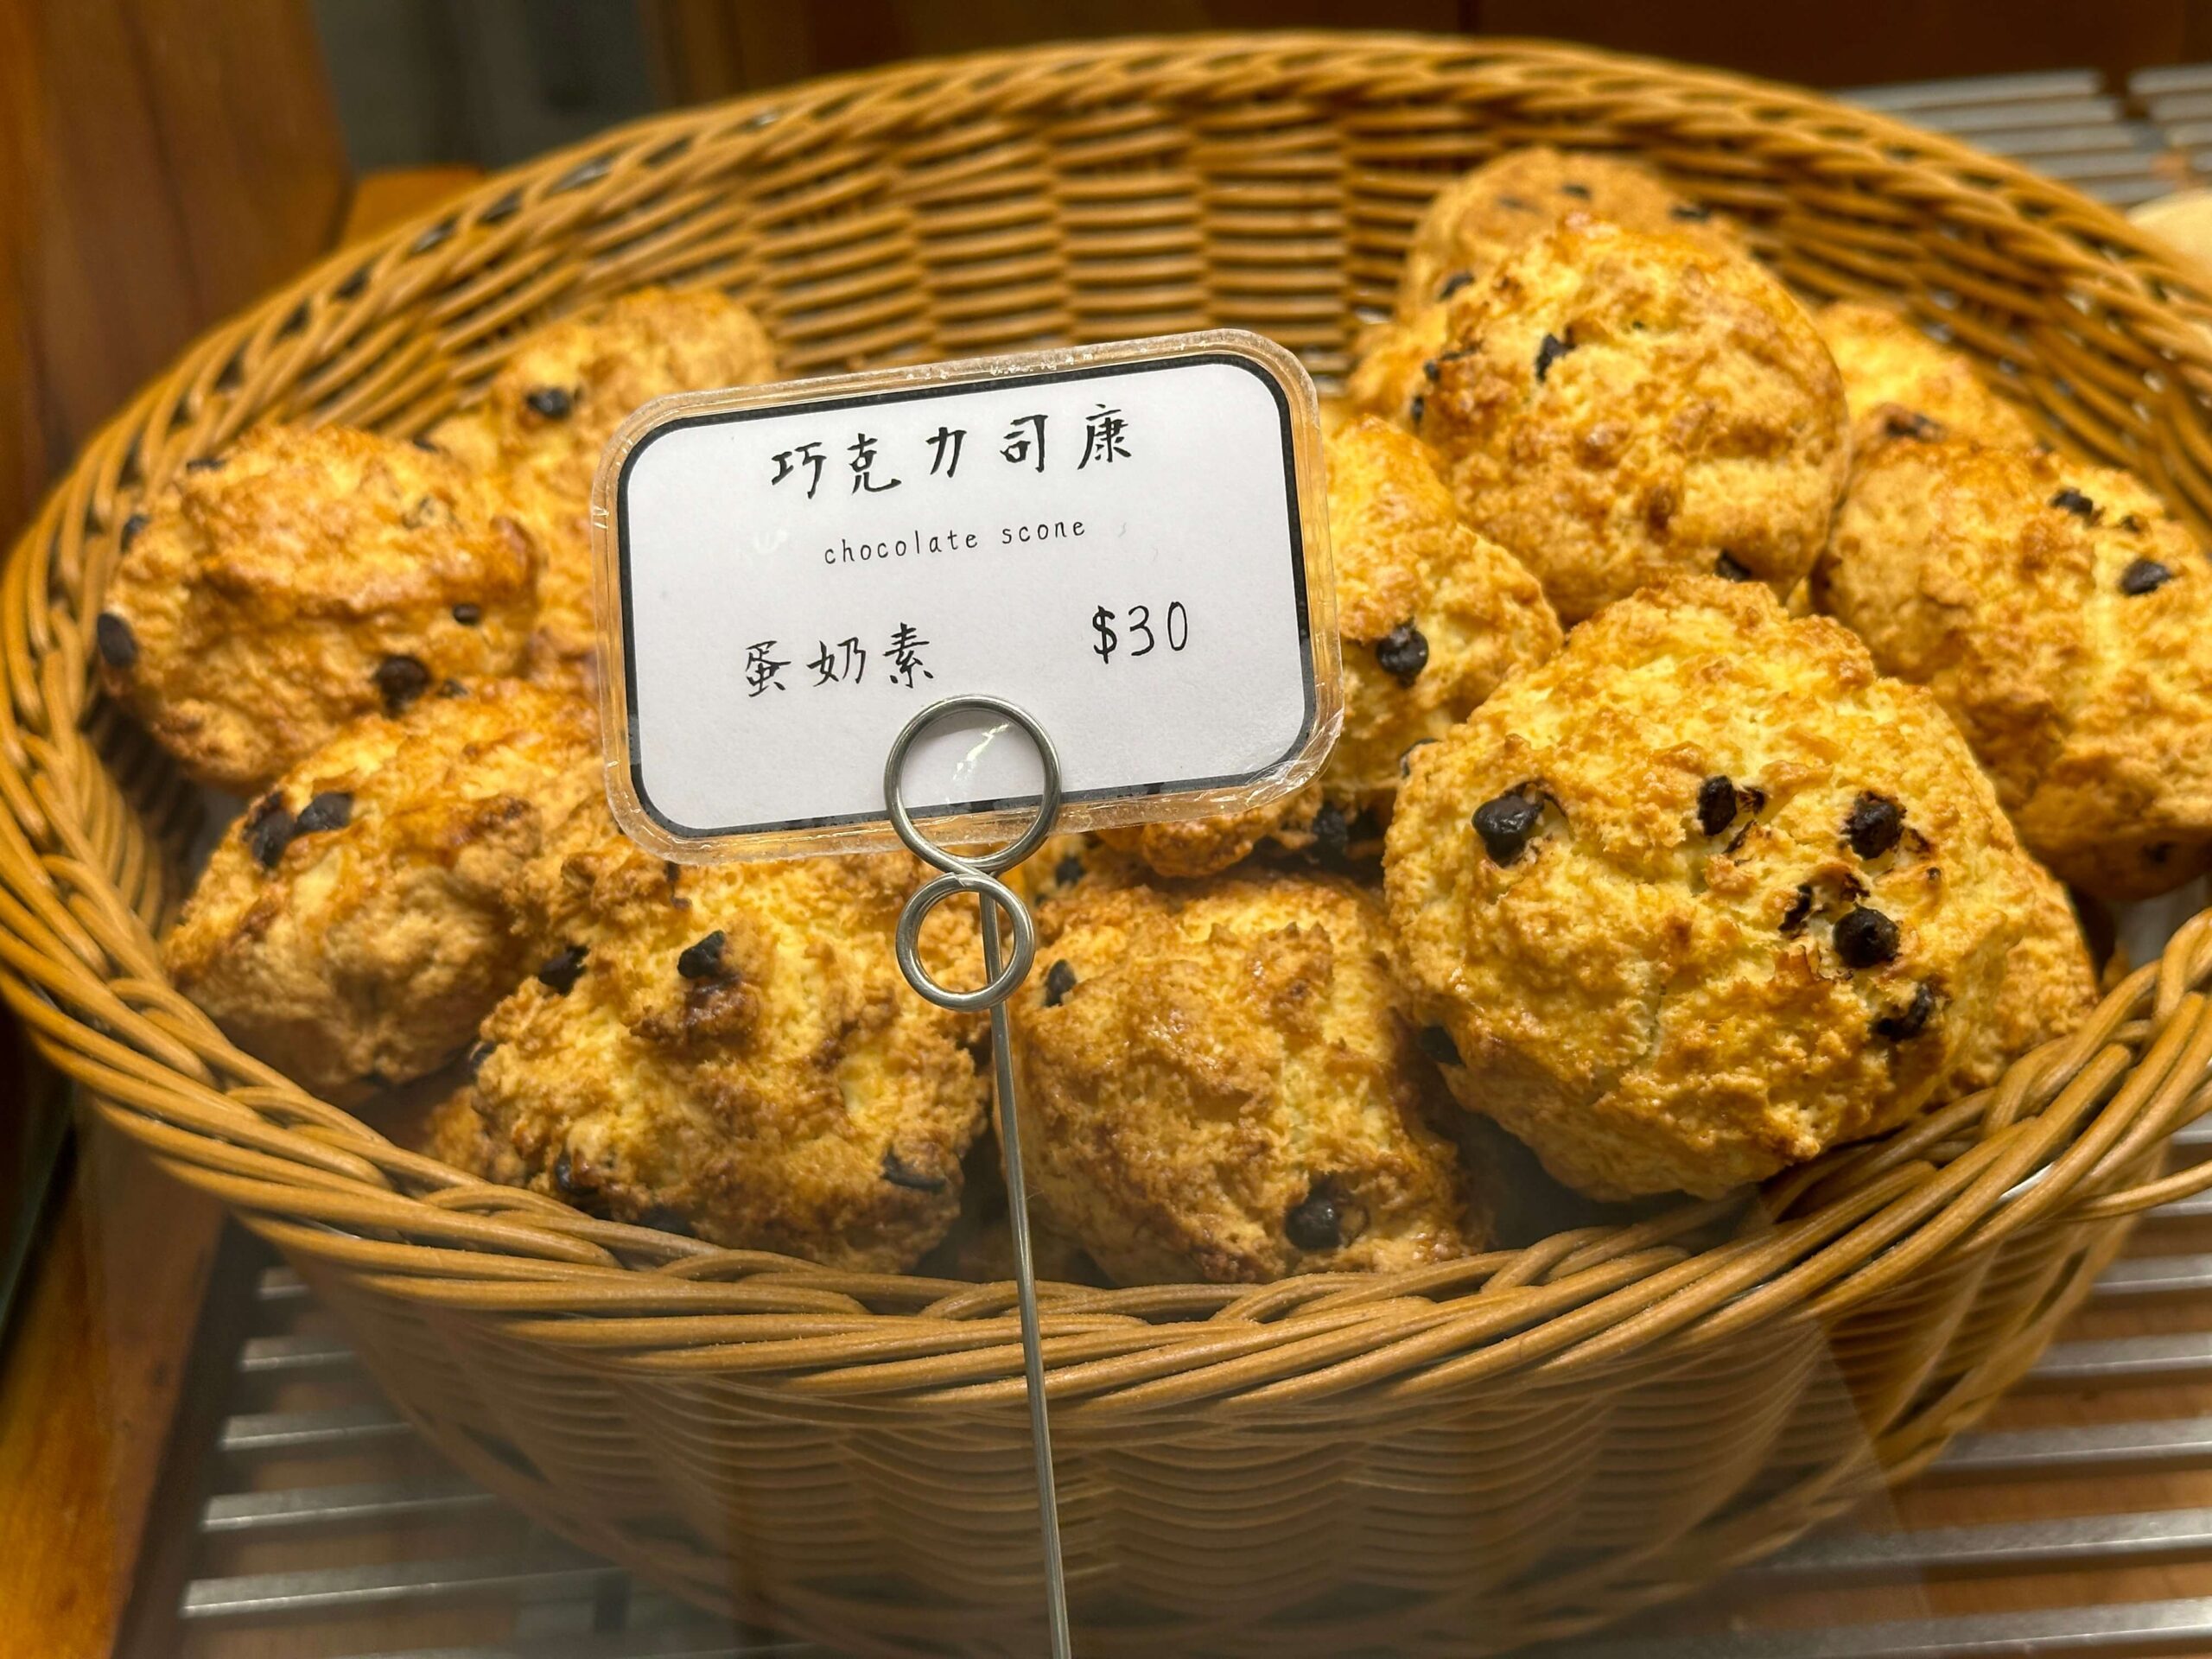 【天母美食】慶祝烘焙，陳耀訓恩師開的麵包店 巧克力司康居然才$30